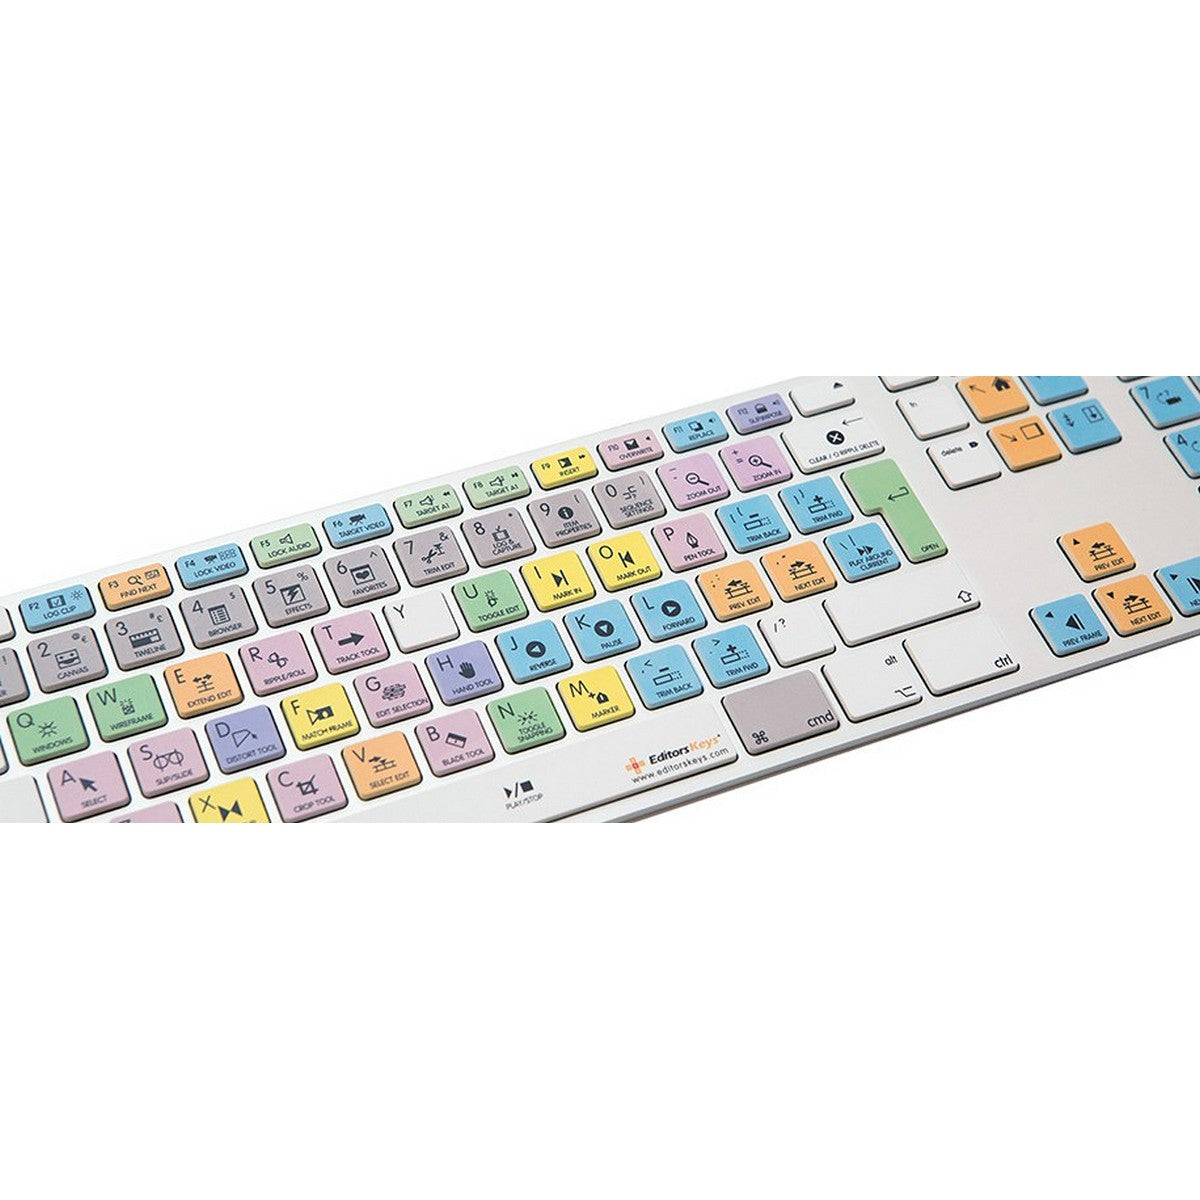 Editors Keys Dedicated Keyboard for Final Cut Pro 7 | Apple Shortcut Wired Keyboard